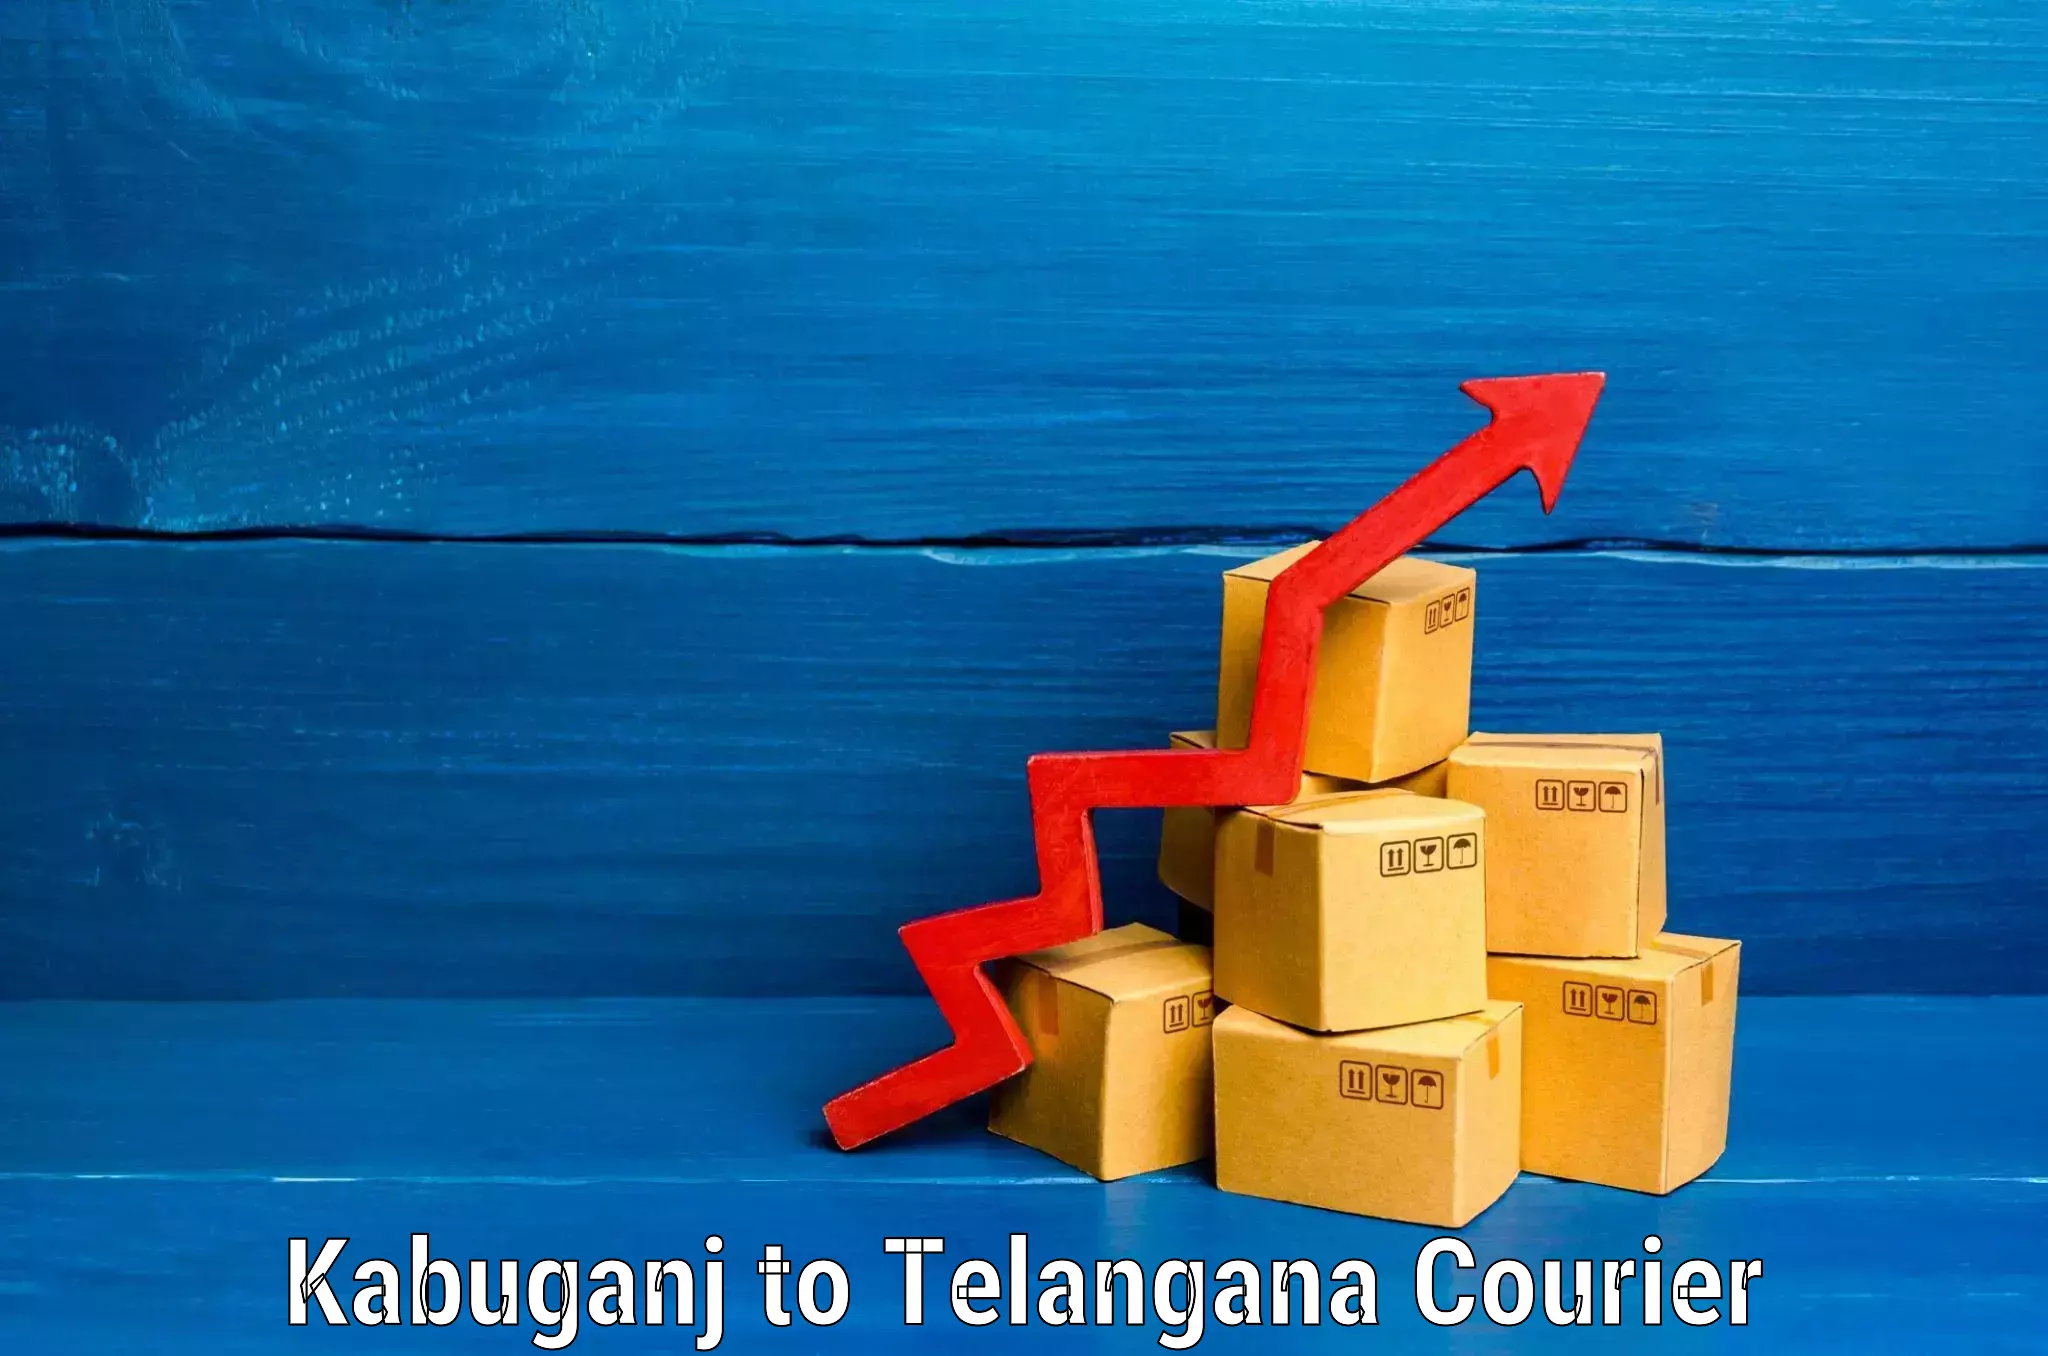 Luggage transport operations Kabuganj to Telangana